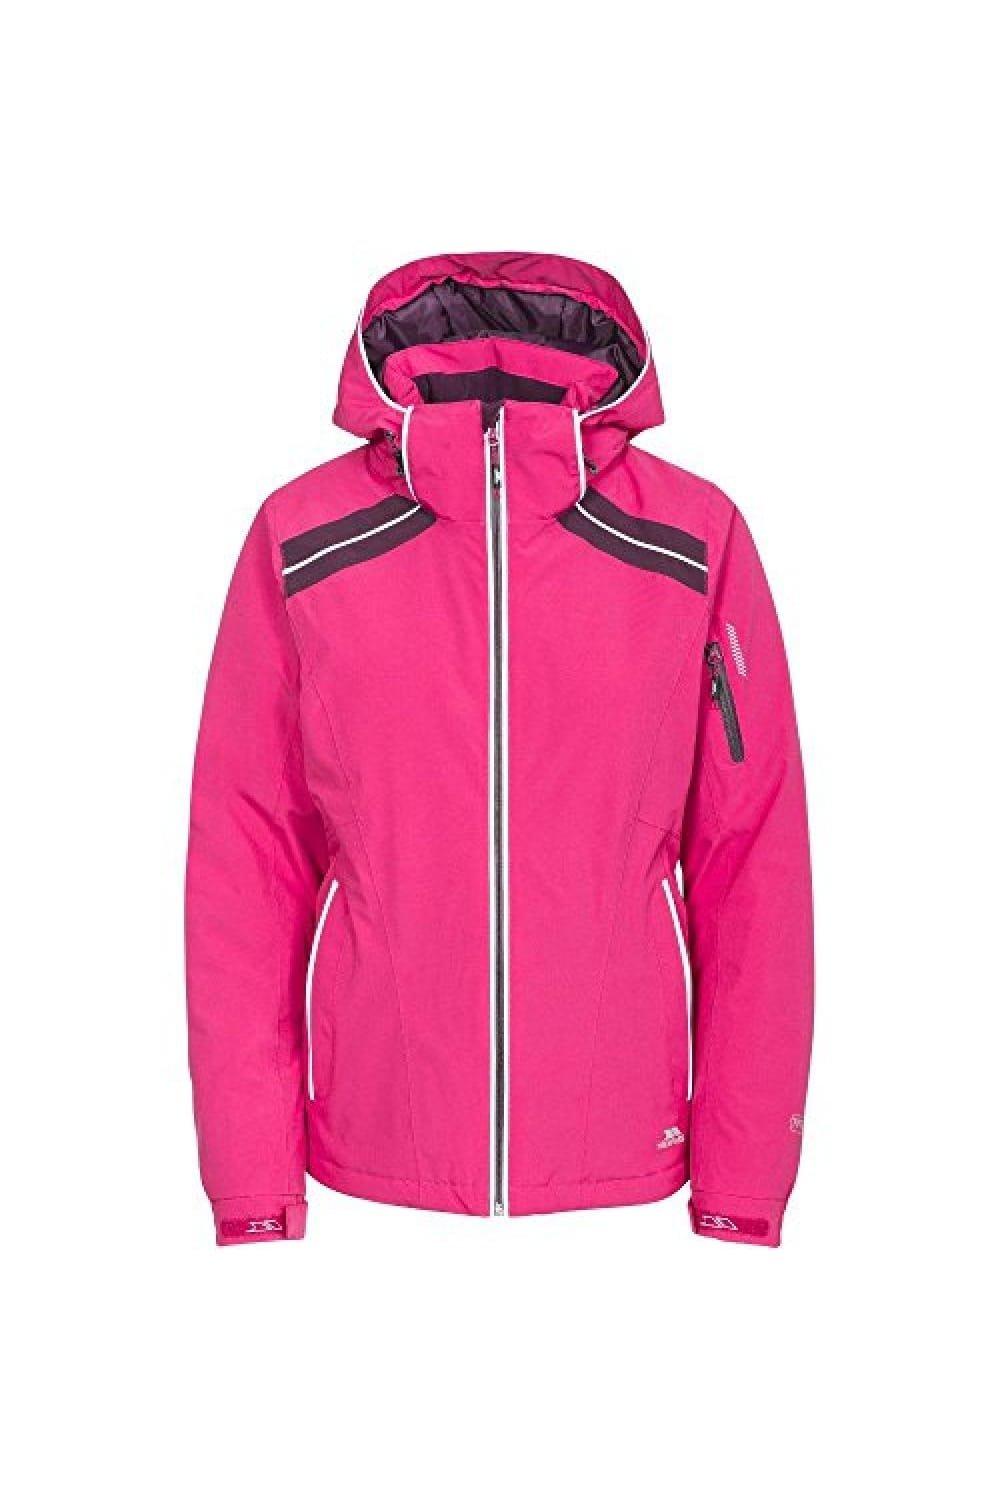 Лыжная куртка Raithlin Trespass, розовый